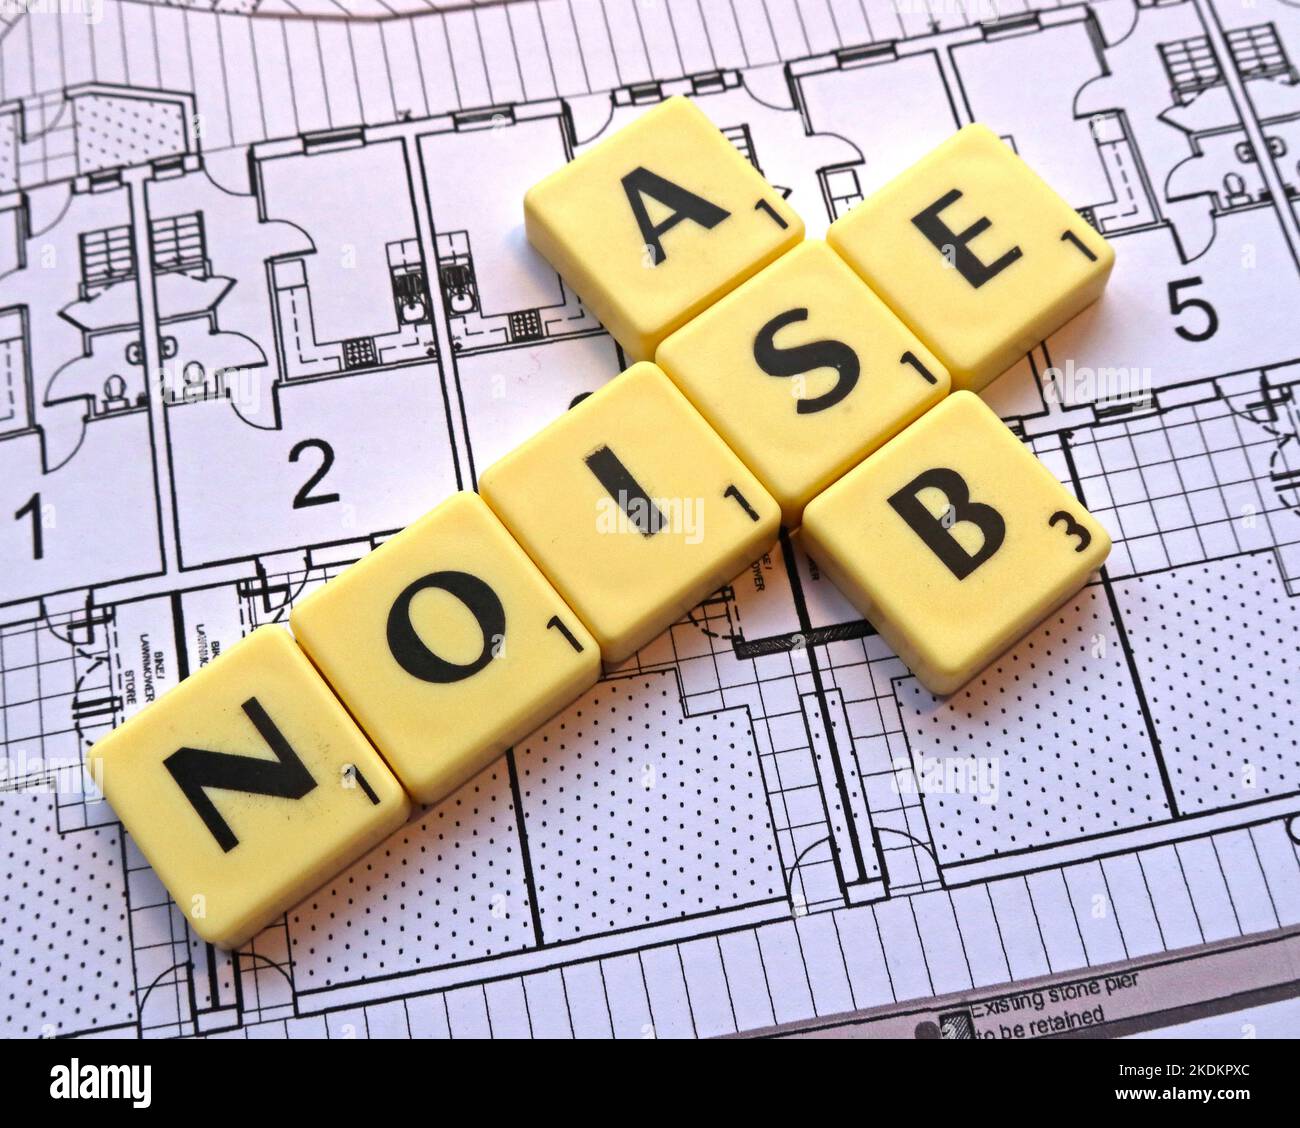 Lärm ASB Anti-Sozialverhalten - Scrabble Briefe über Pläne für ein Wohnungssystem - Immobilien Fragen Stockfoto